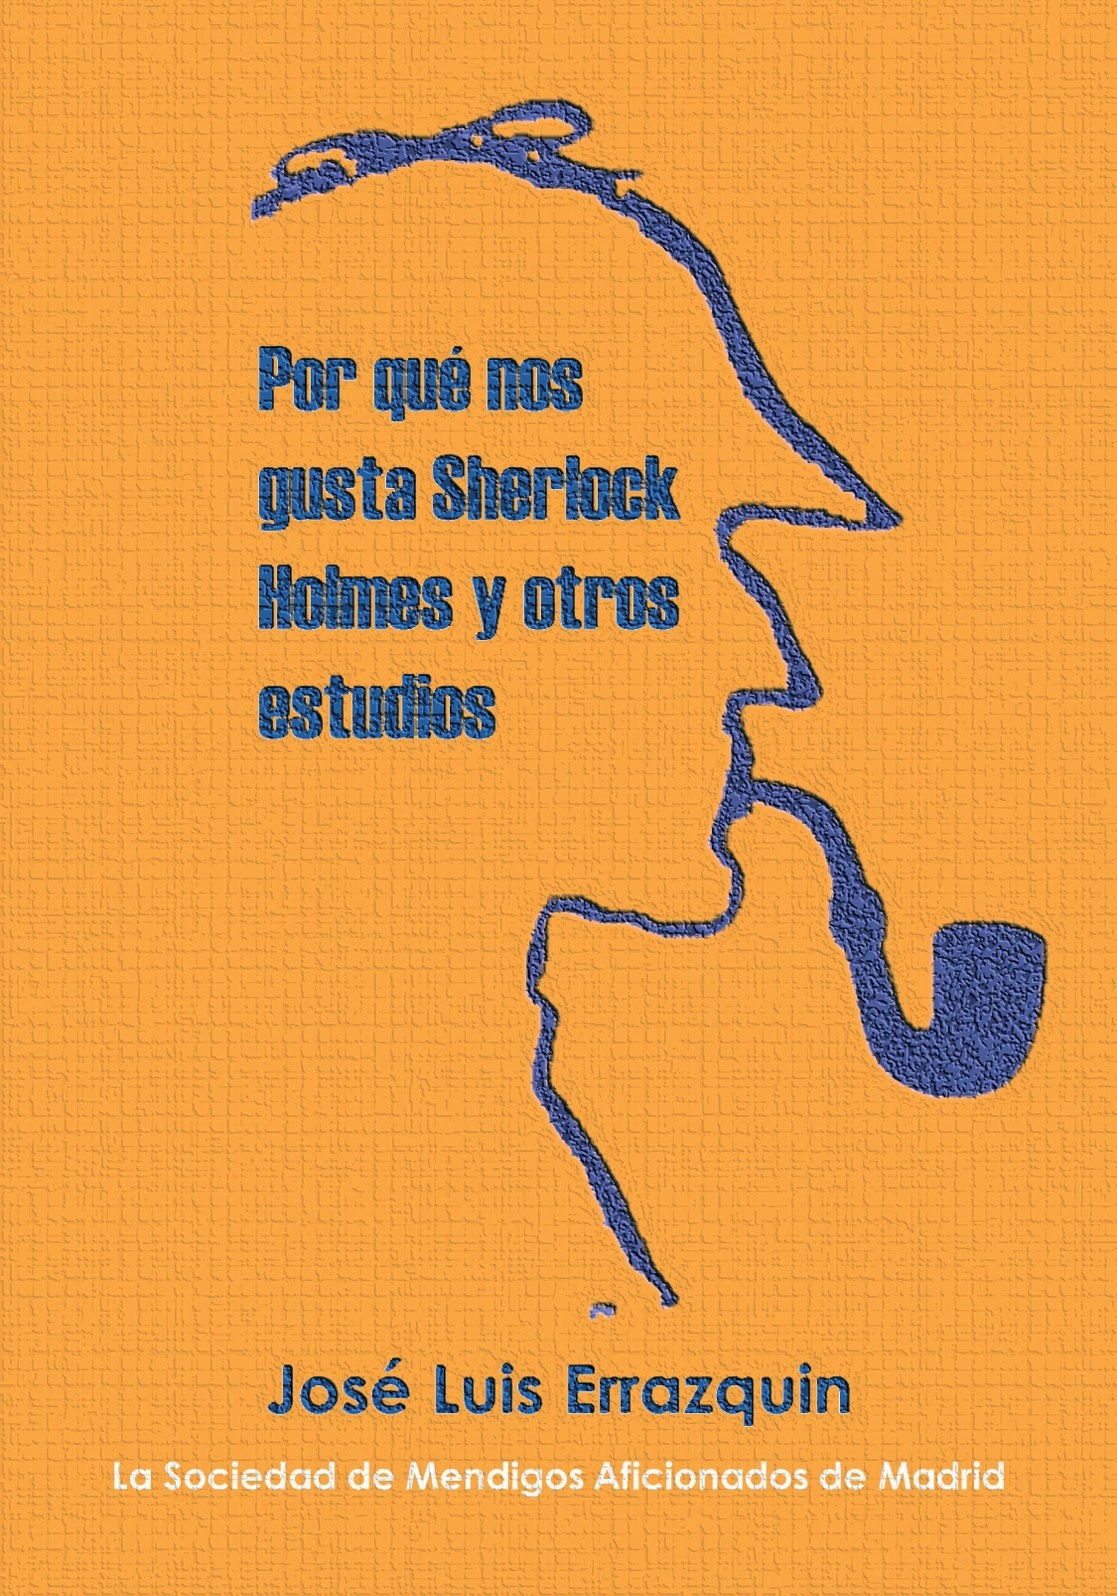 Por qué nos gusta Sherlock Holmes y otros estudios